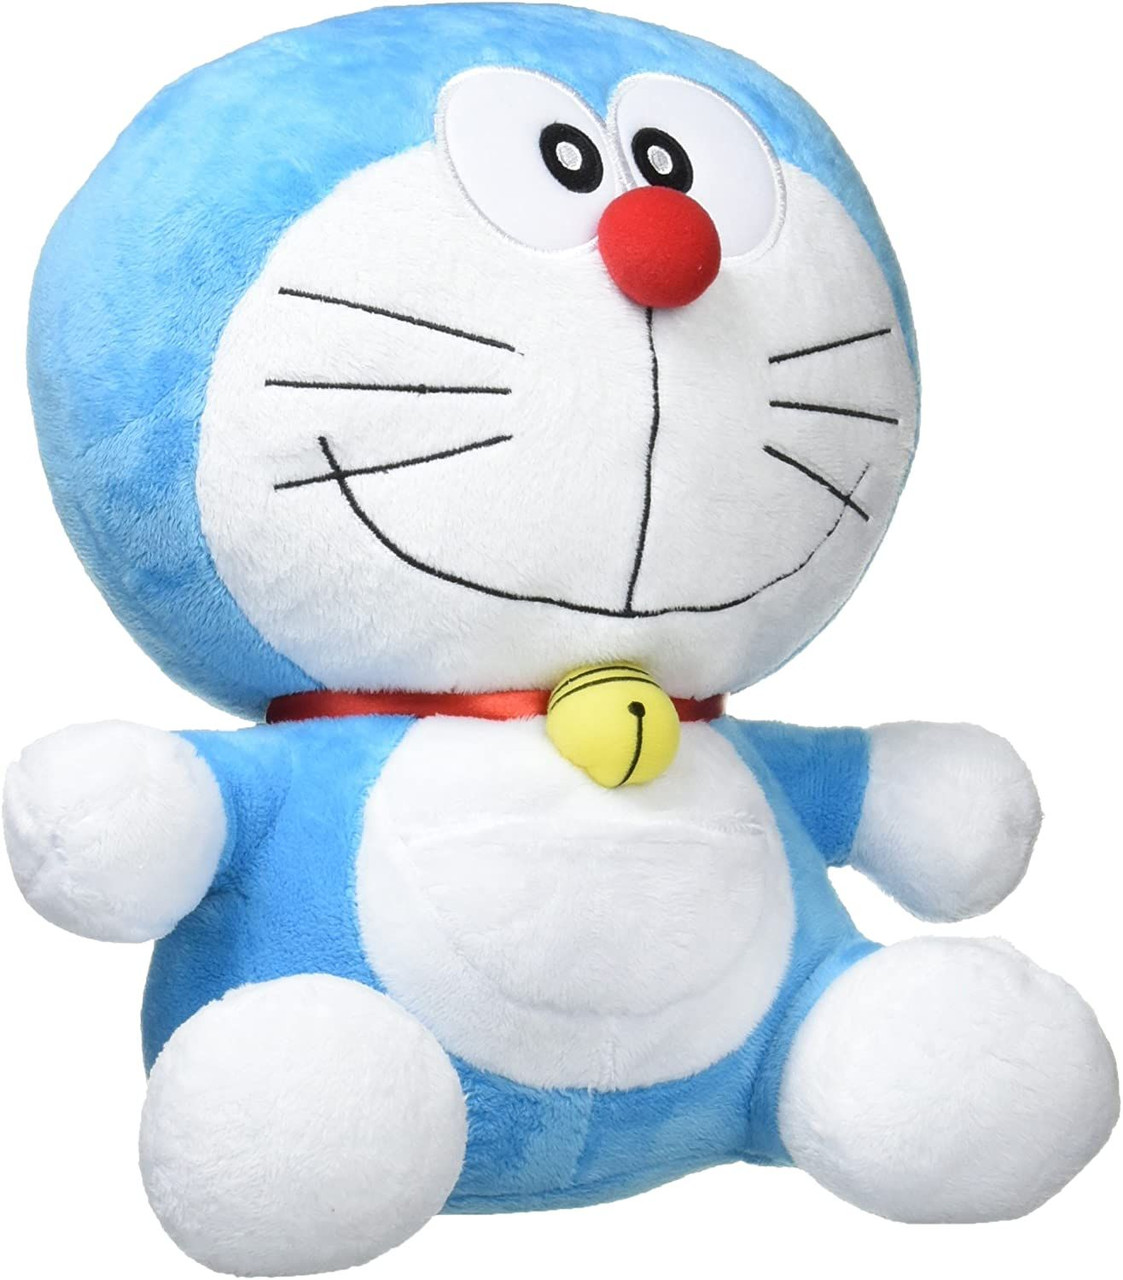 Doraemon Plush Doll - Những con búp bê Doraemon bông xù thật dễ thương và đáng yêu! Hãy xem hình ảnh liên quan để cùng thưởng thức cảm giác ôm trọn chú mèo máy này trong vòng tay của mình.